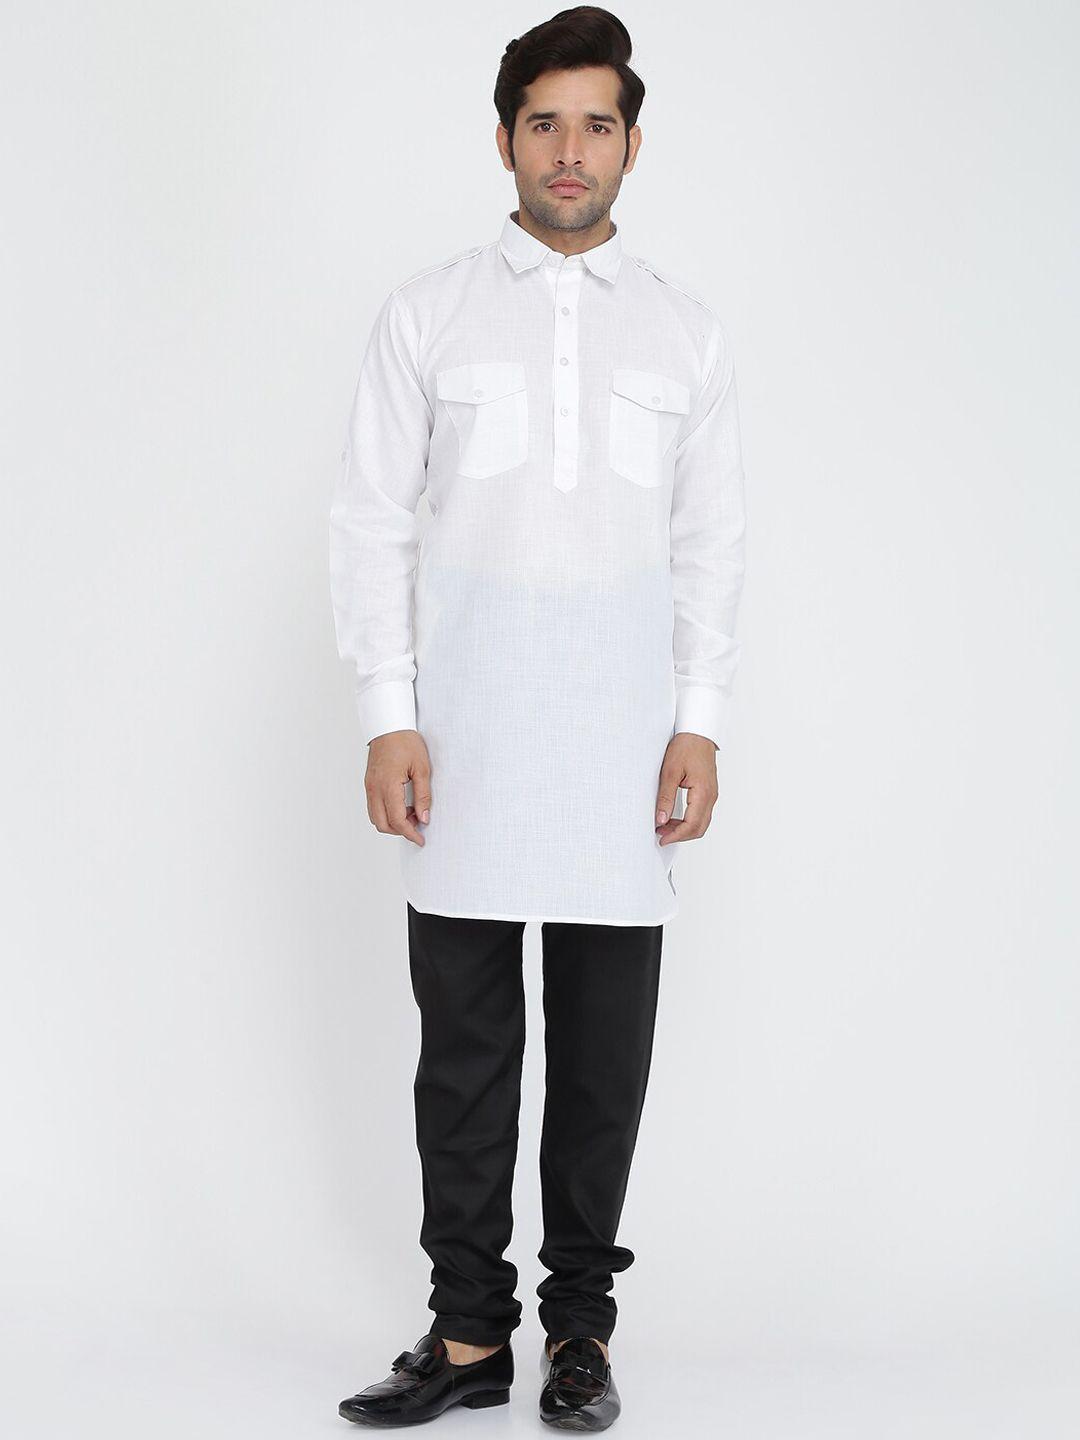 royal kurta pure cotton shirt collar pathani kurta with trousers